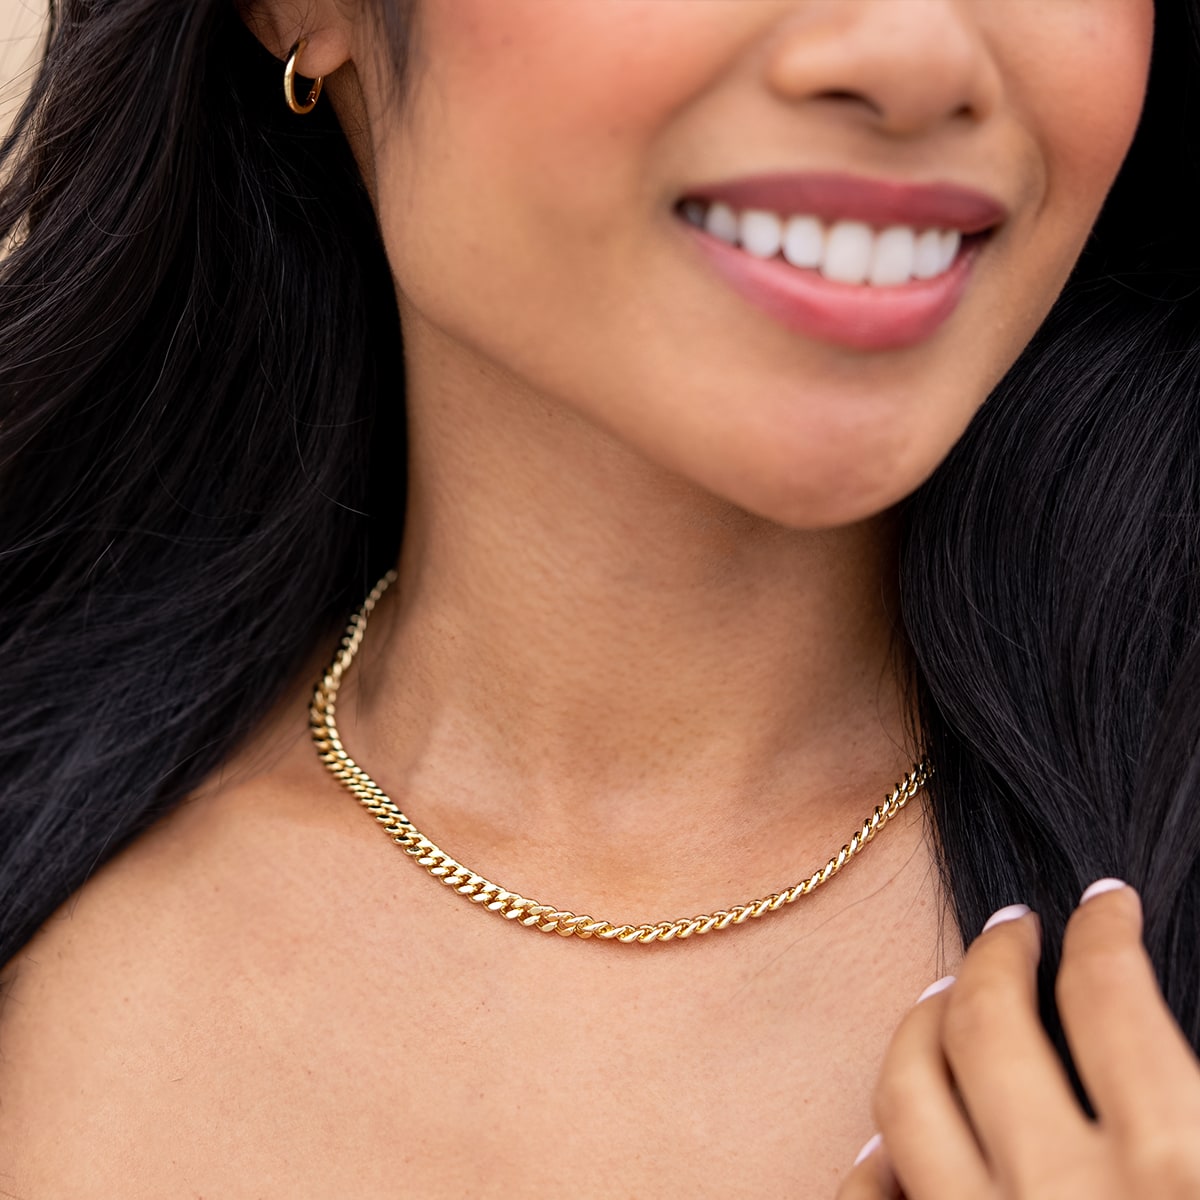 Unique thick gold necklace